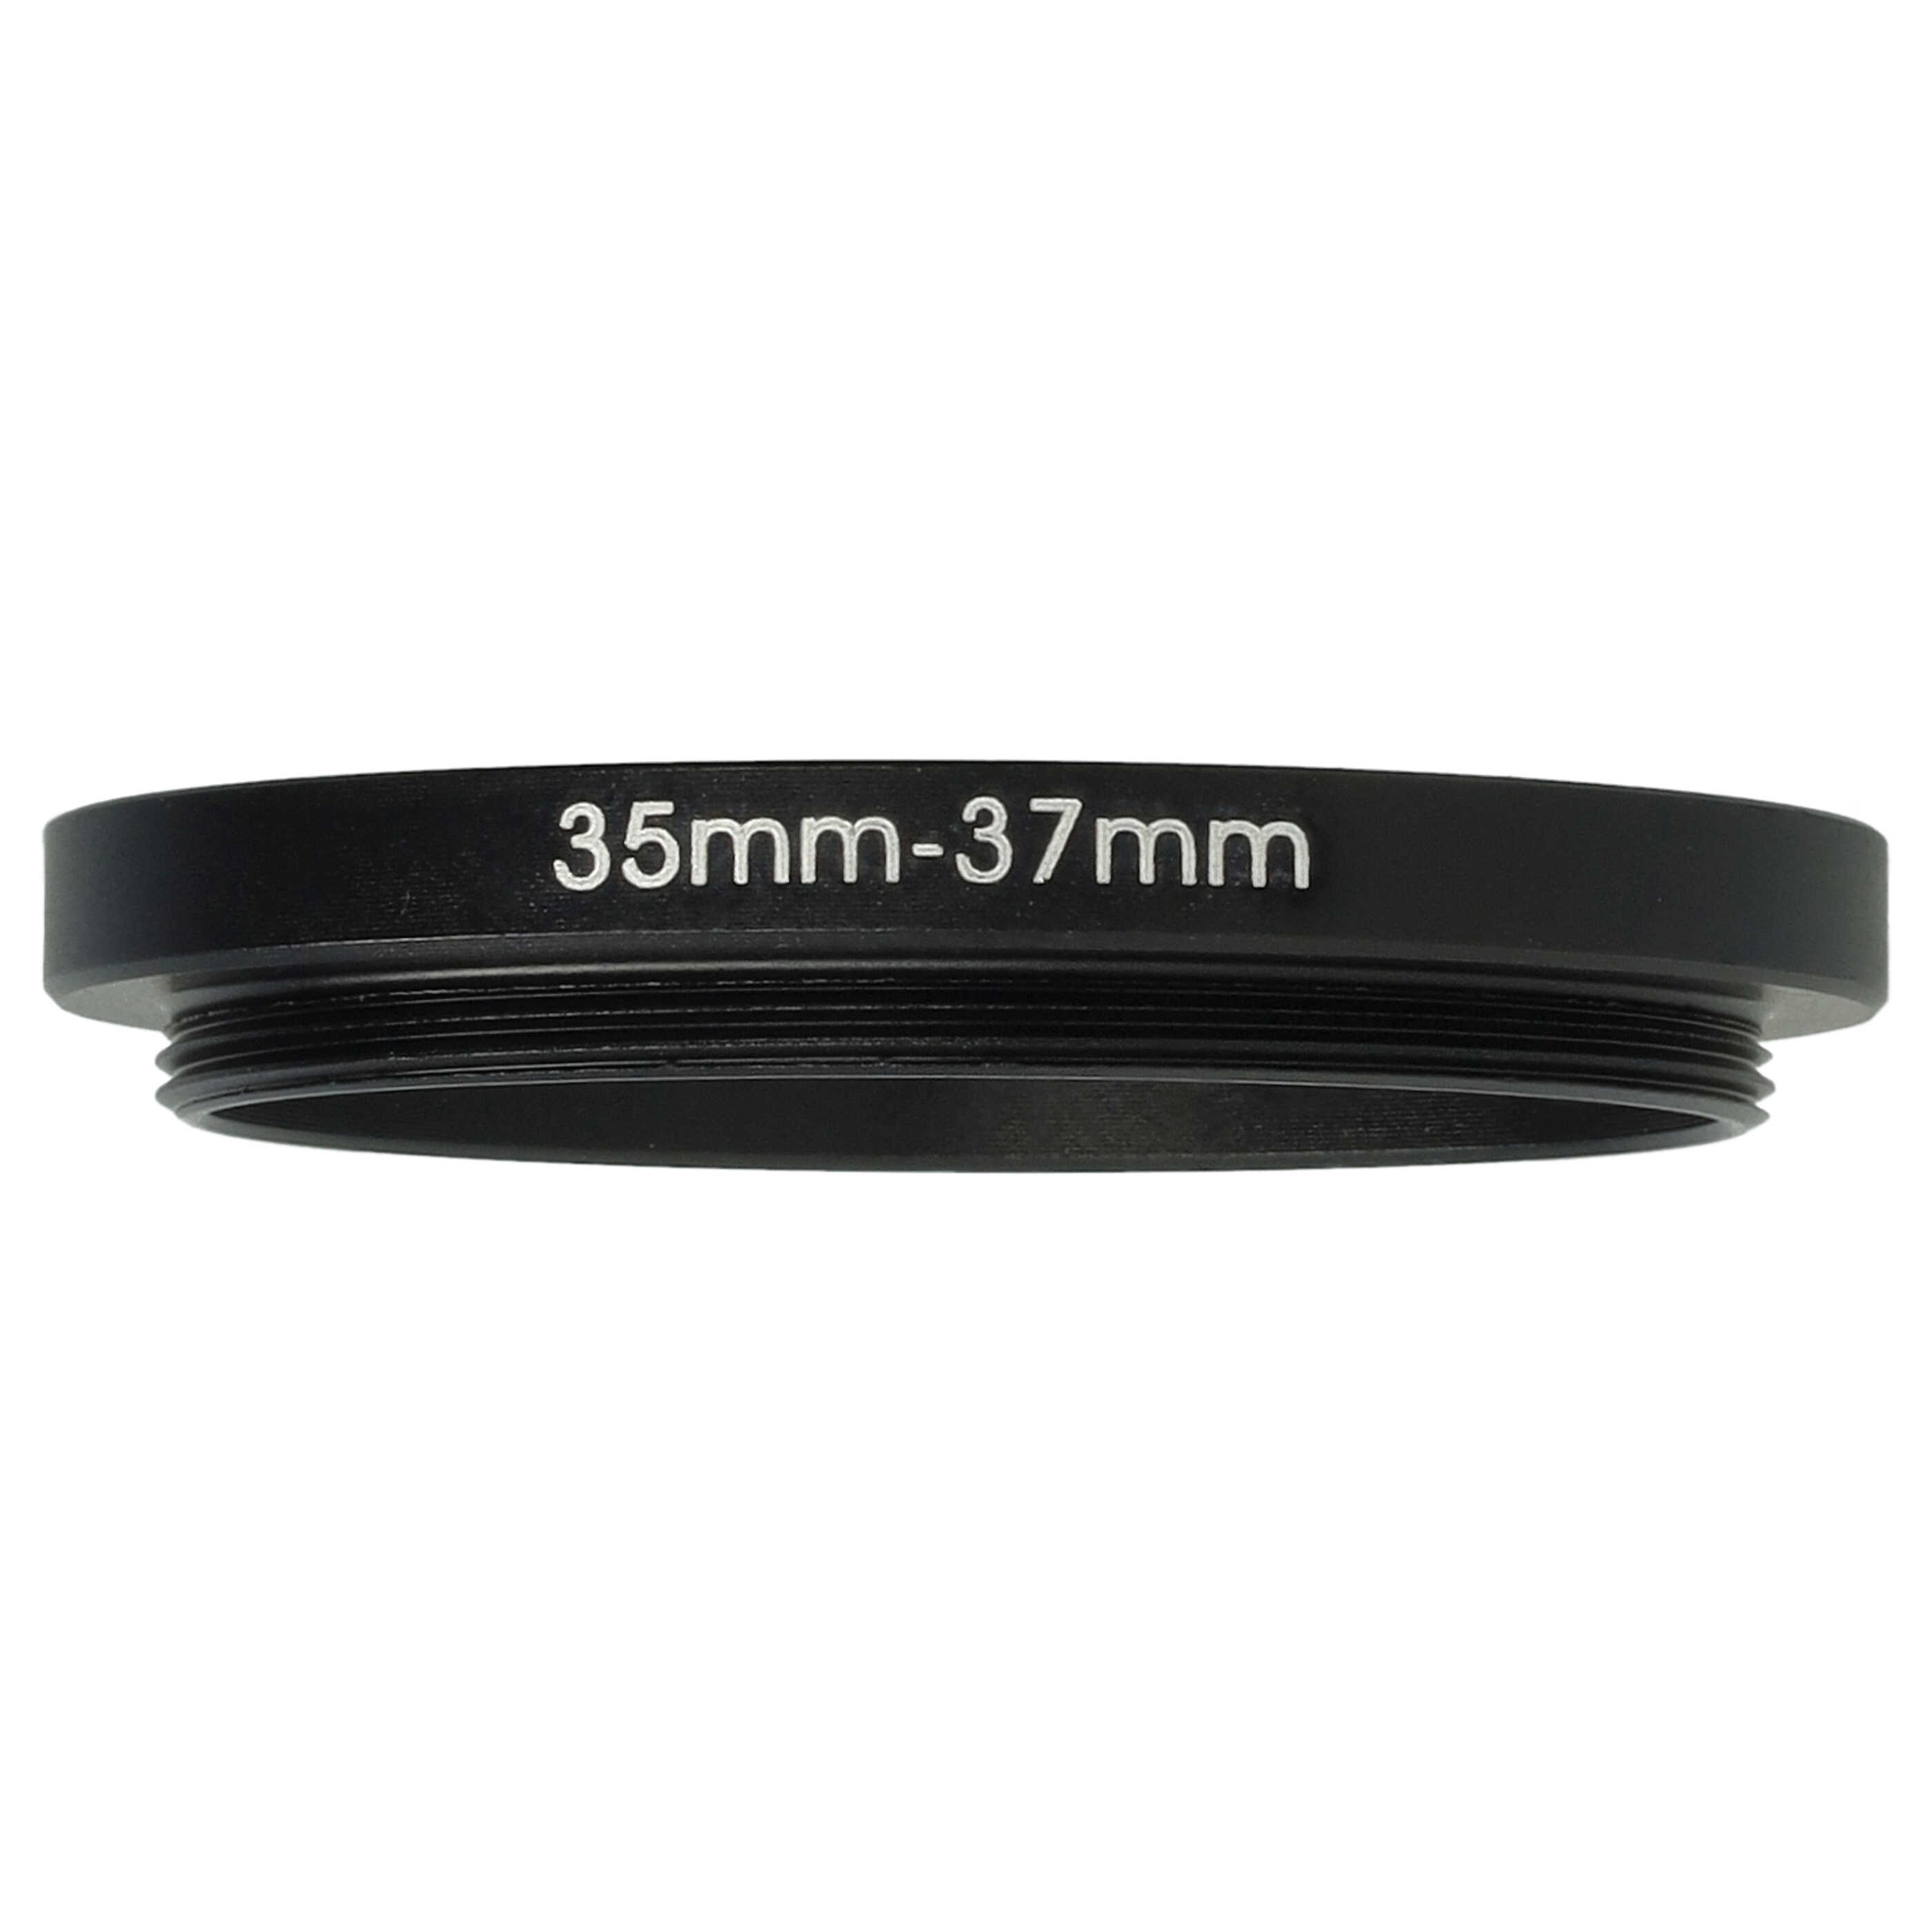 Bague Step-up 35 mm vers 37 mm pour divers objectifs d'appareil photo - Adaptateur filtre